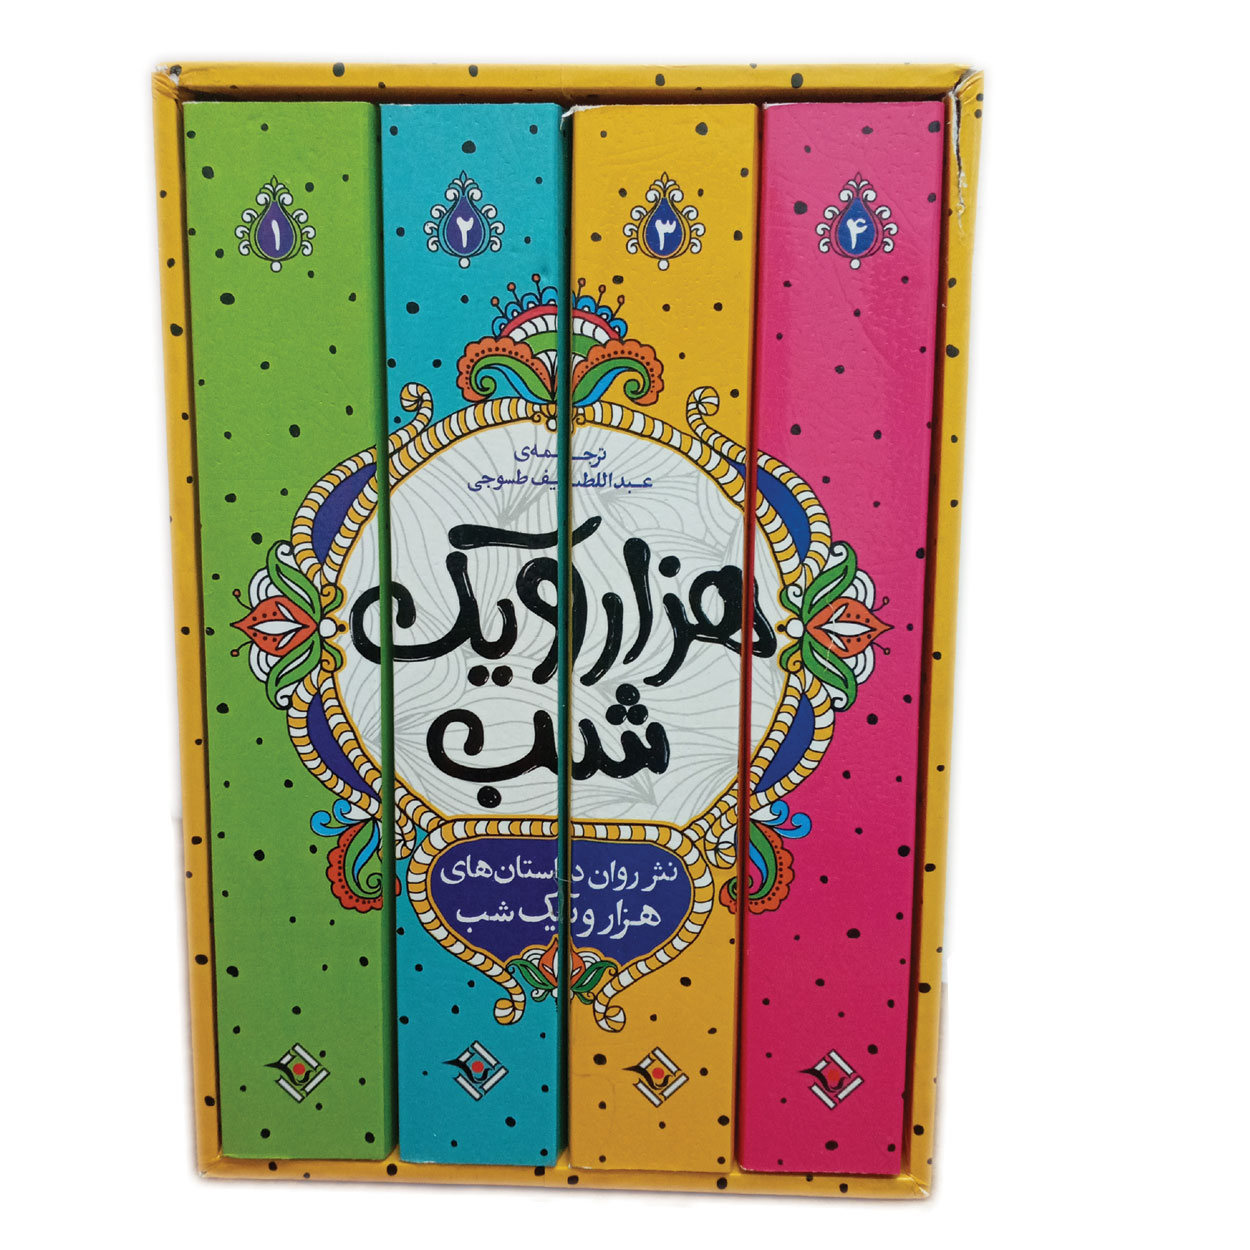 کتاب داستان های هزار و یک شب اثر عبدالطیف طسوجی تبریزی انتشارات نگاه آشنا 4 جلدی